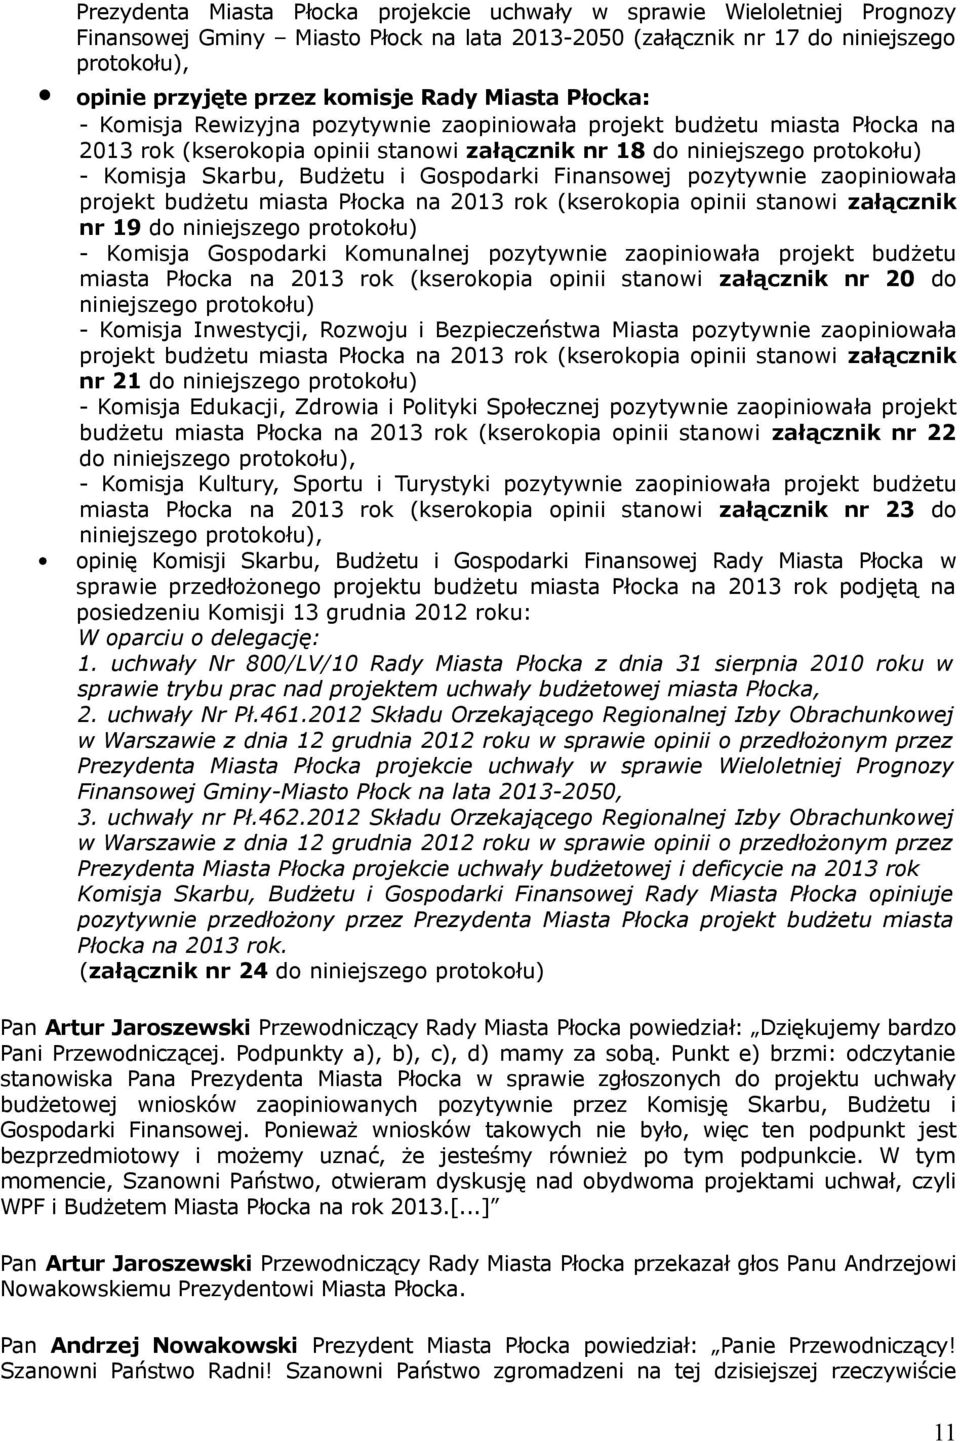 Budżetu i Gospodarki Finansowej pozytywnie zaopiniowała projekt budżetu miasta Płocka na 2013 rok (kserokopia opinii stanowi załącznik nr 19 do niniejszego protokołu) - Komisja Gospodarki Komunalnej